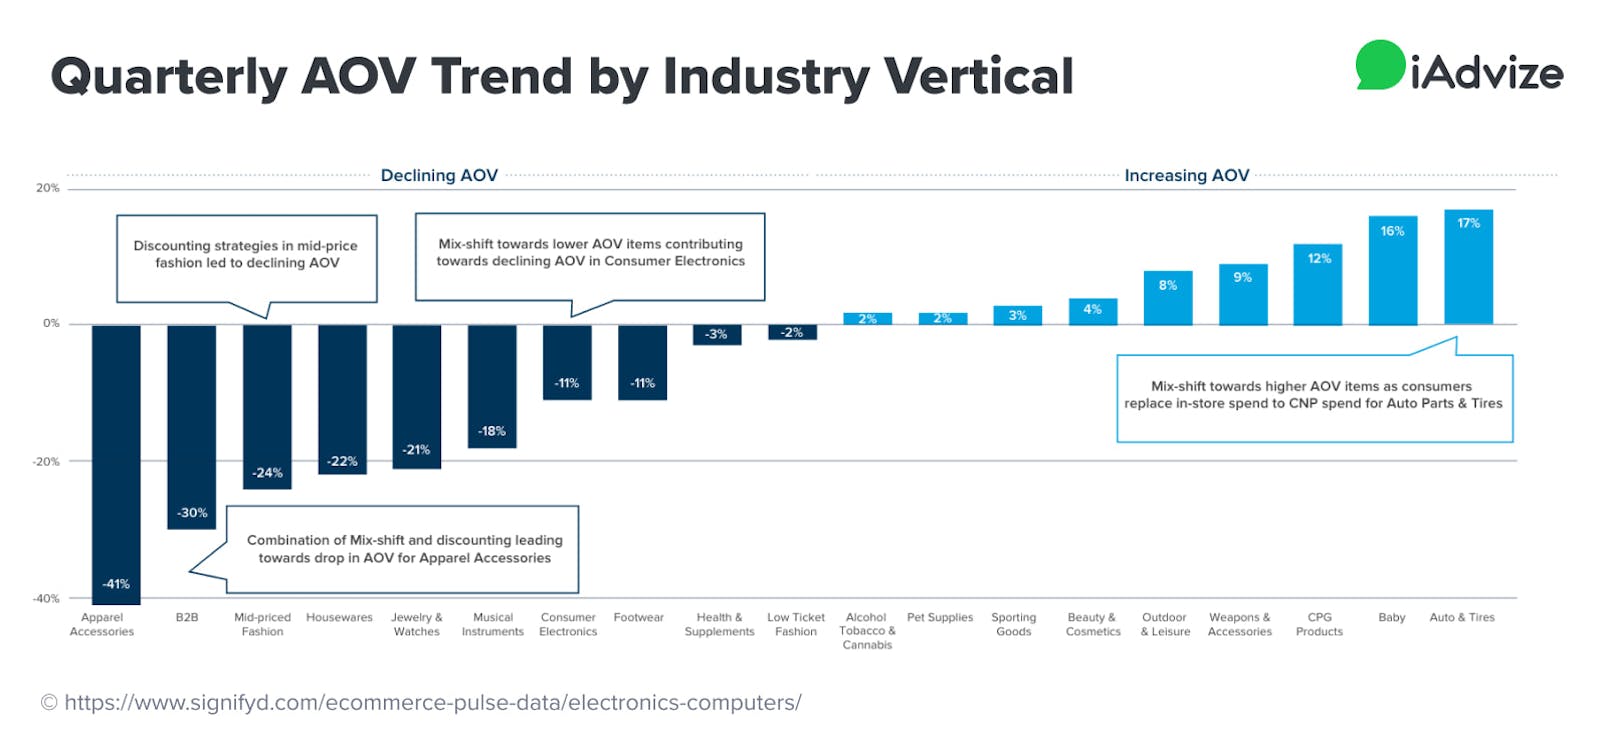 consumer electronics saw declining AOV